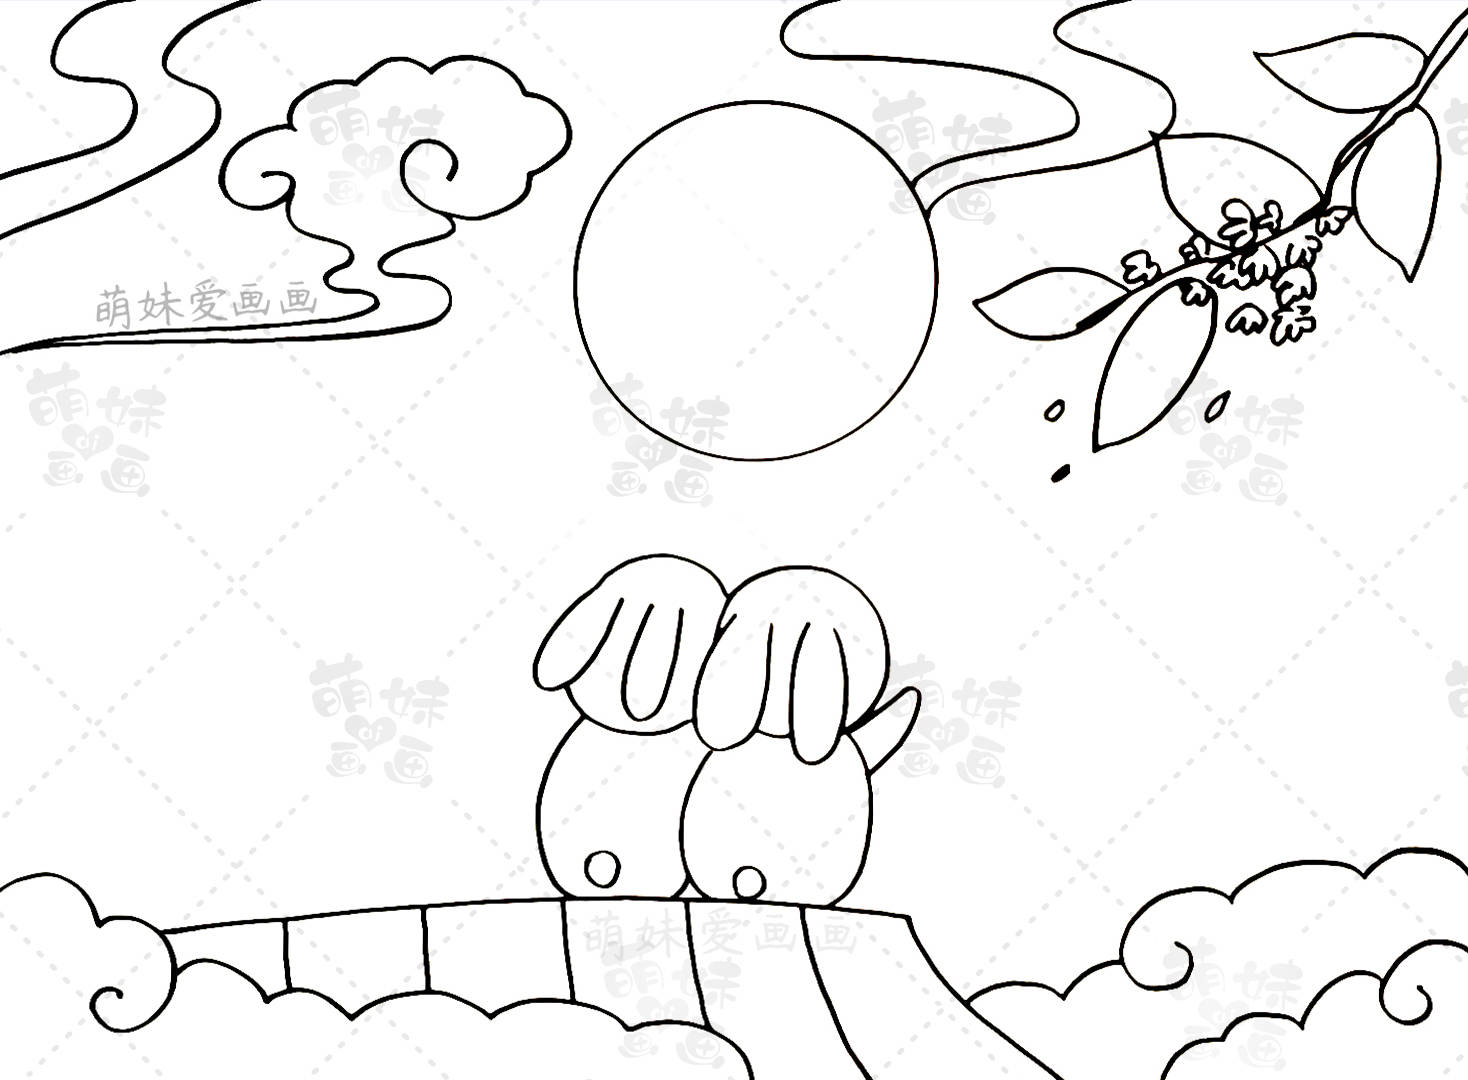 第一款手抄报:中秋赏月手抄报 一,首先,我们用云朵,桂花树,玉兔,月亮